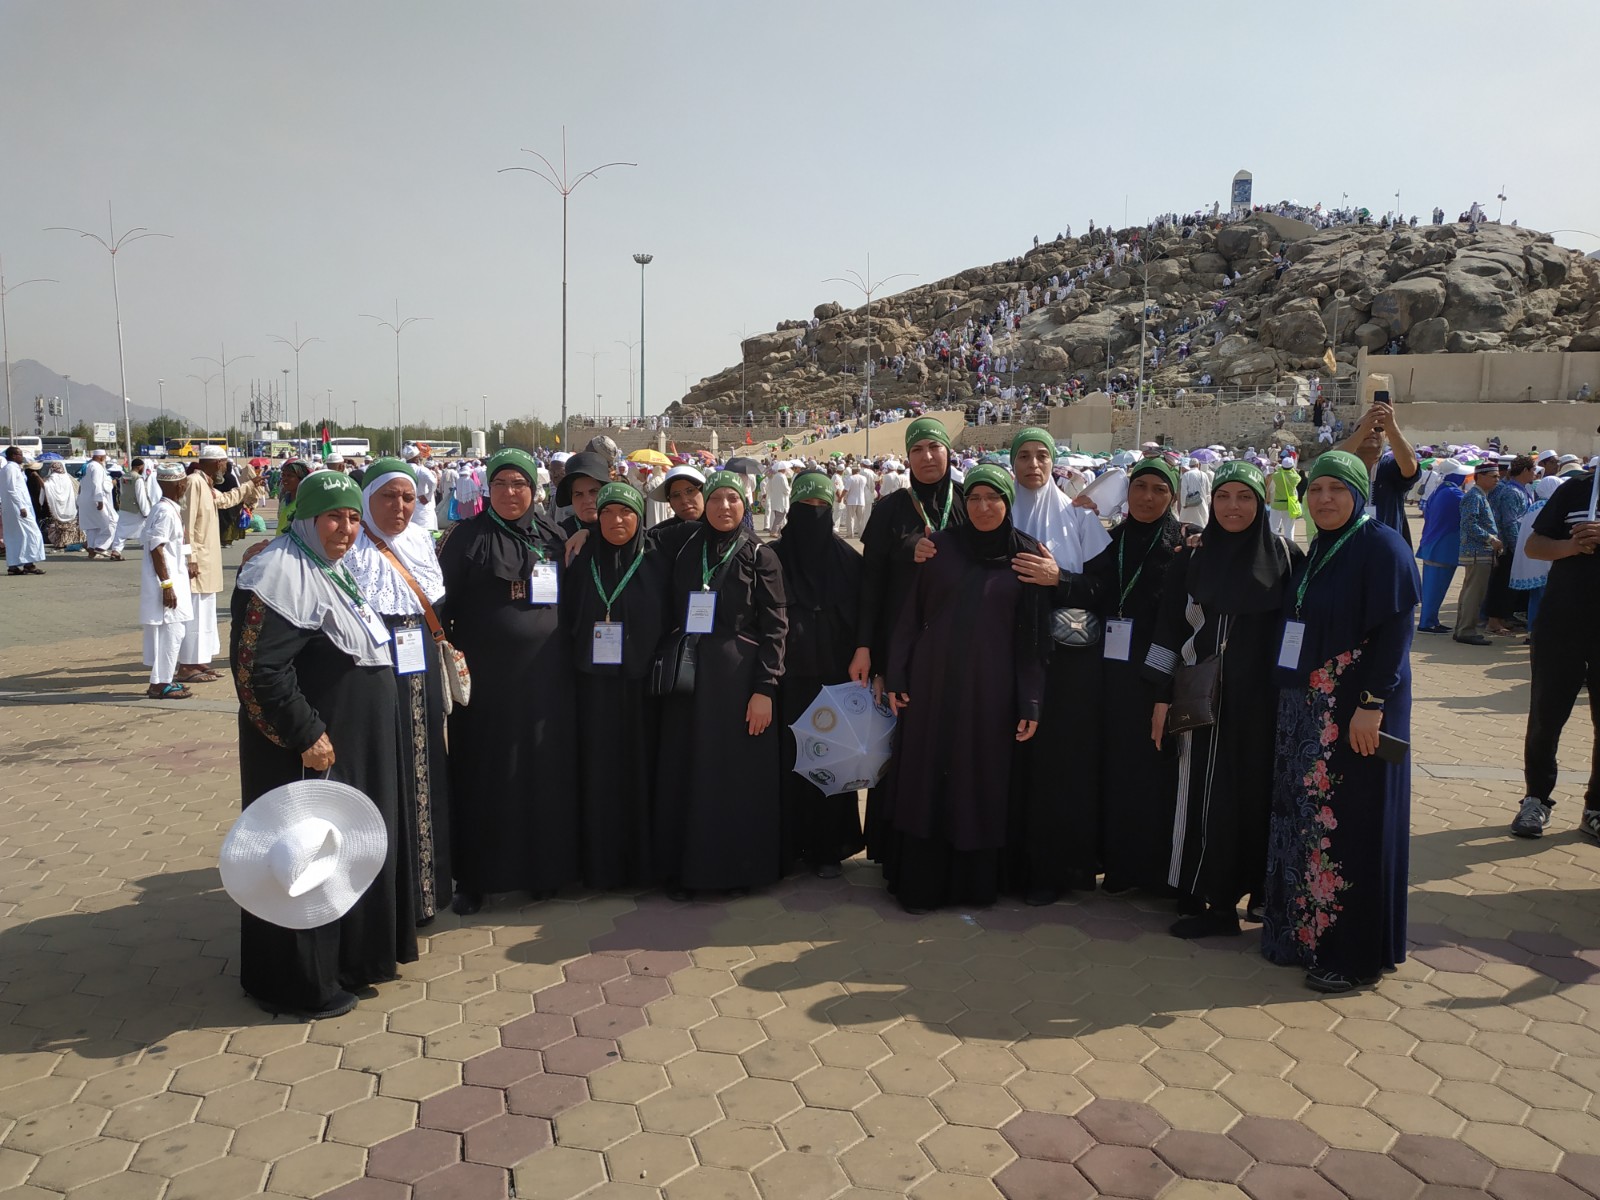 بالصور: حجاج اللد والرملة البرّ يزورون الاماكن المقدسّة في مكة المكرمة